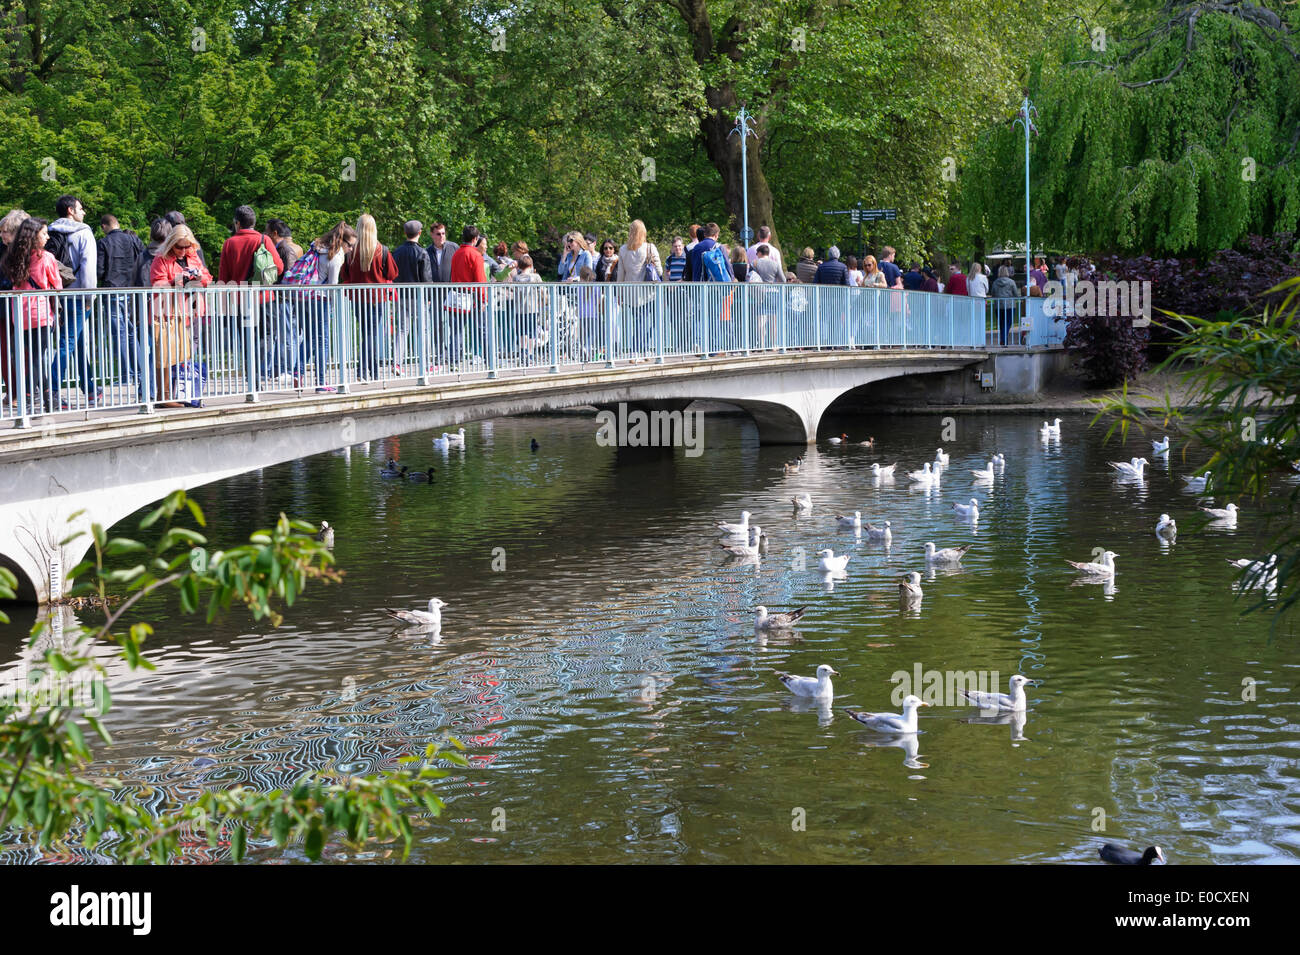 Menschen, überqueren eine kleine Stahlbrücke in St James Park, London, England, Vereinigtes Königreich. Stockfoto